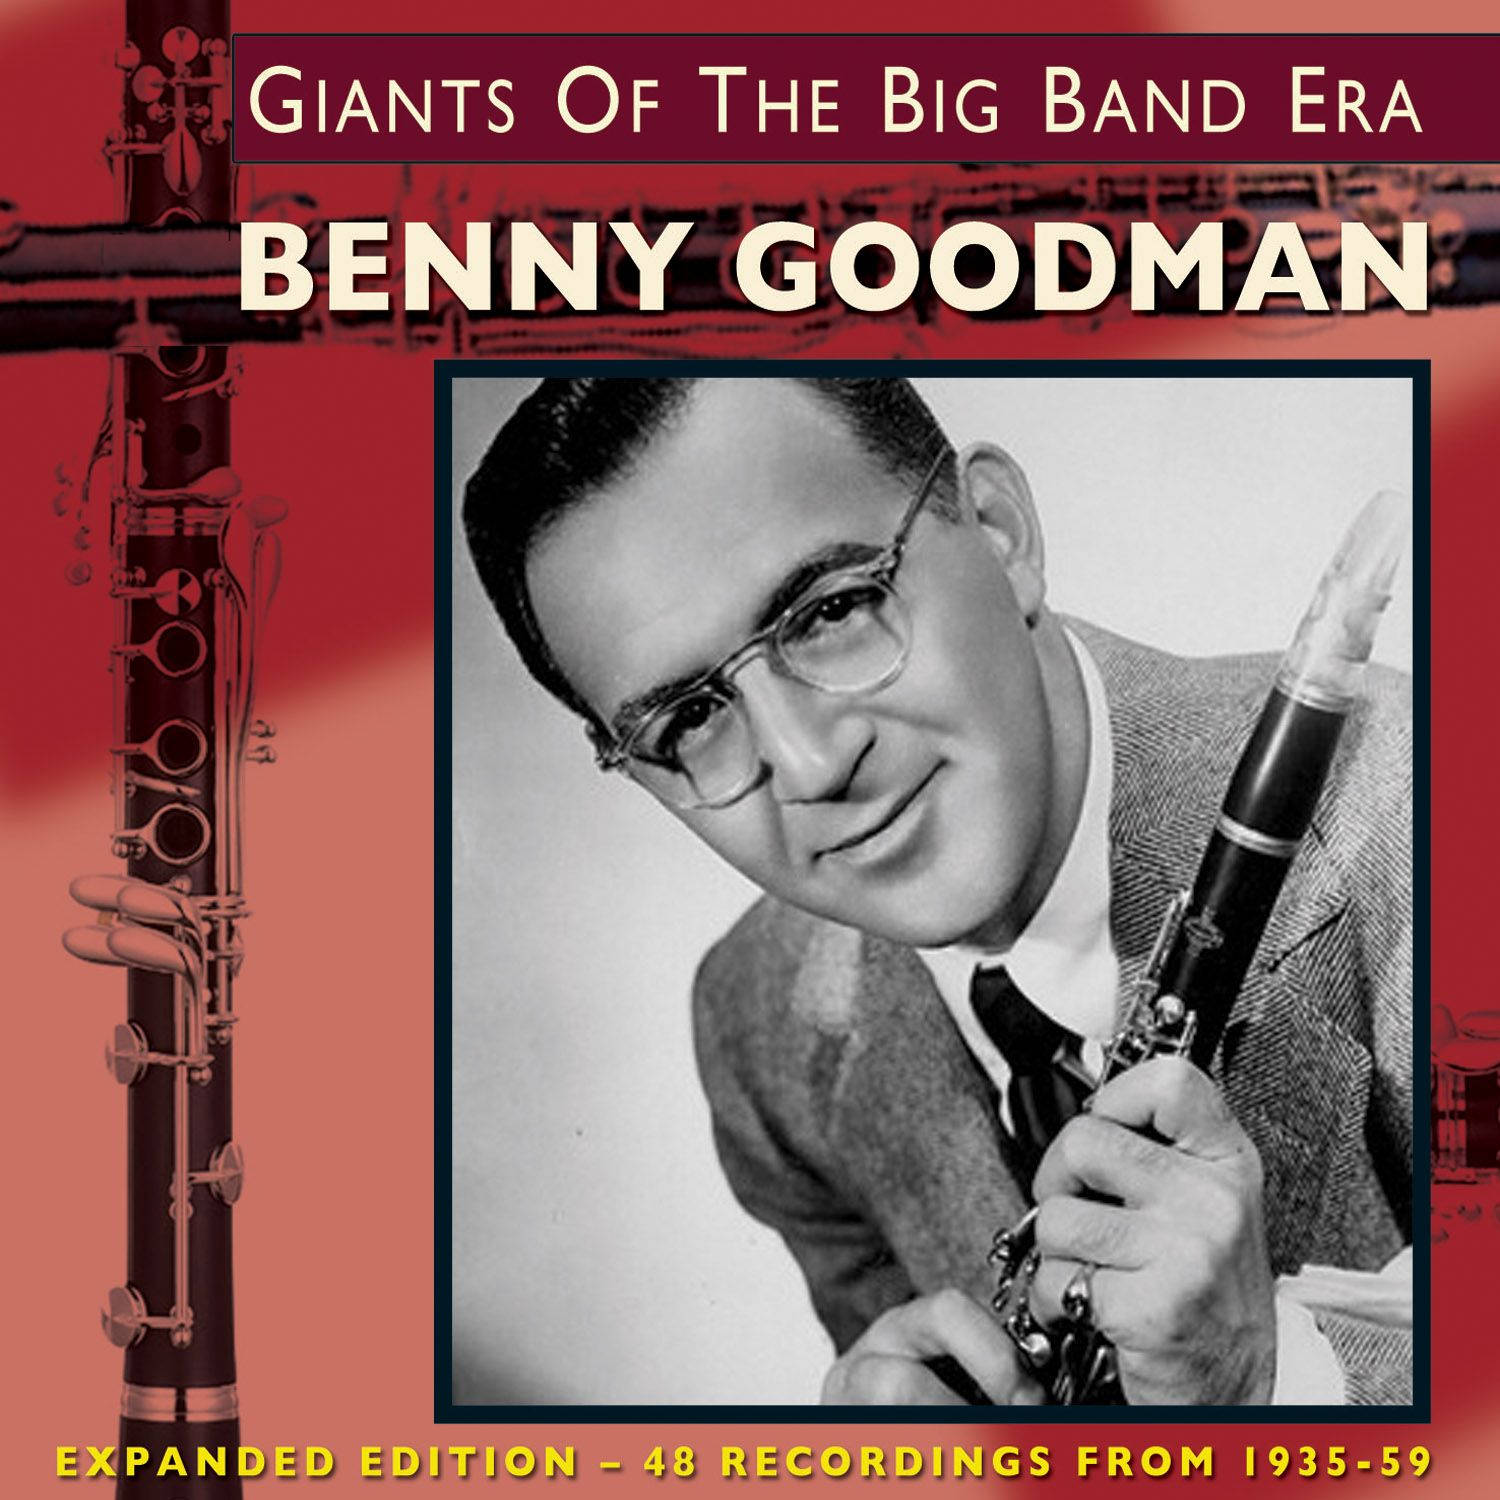 Gigantesda Era Do Big Band Benny Goodman 2013. Papel de Parede